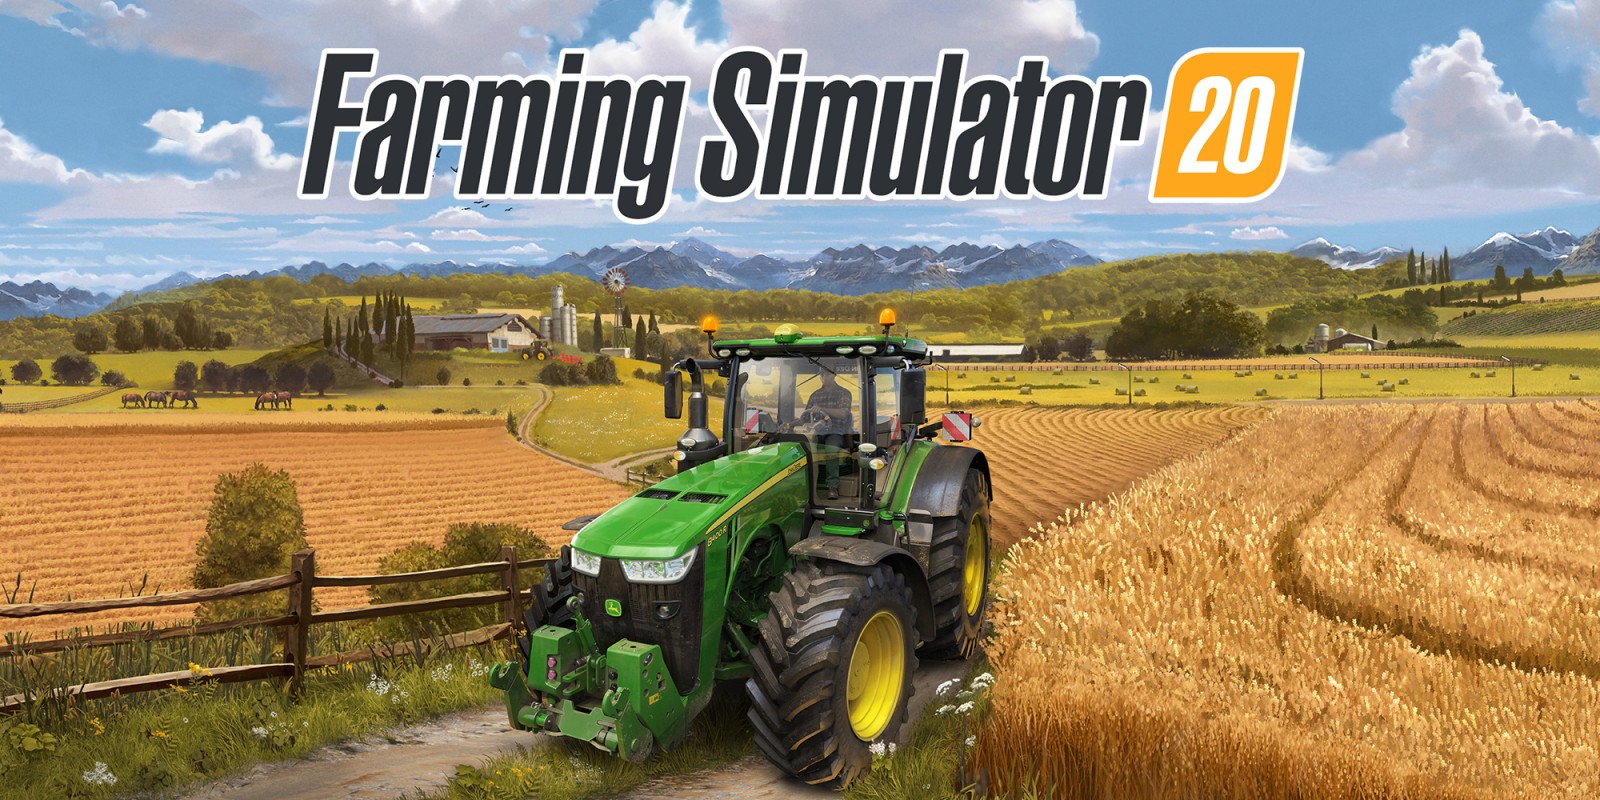 Resultado de imagen de farming simulator 20 nintendo